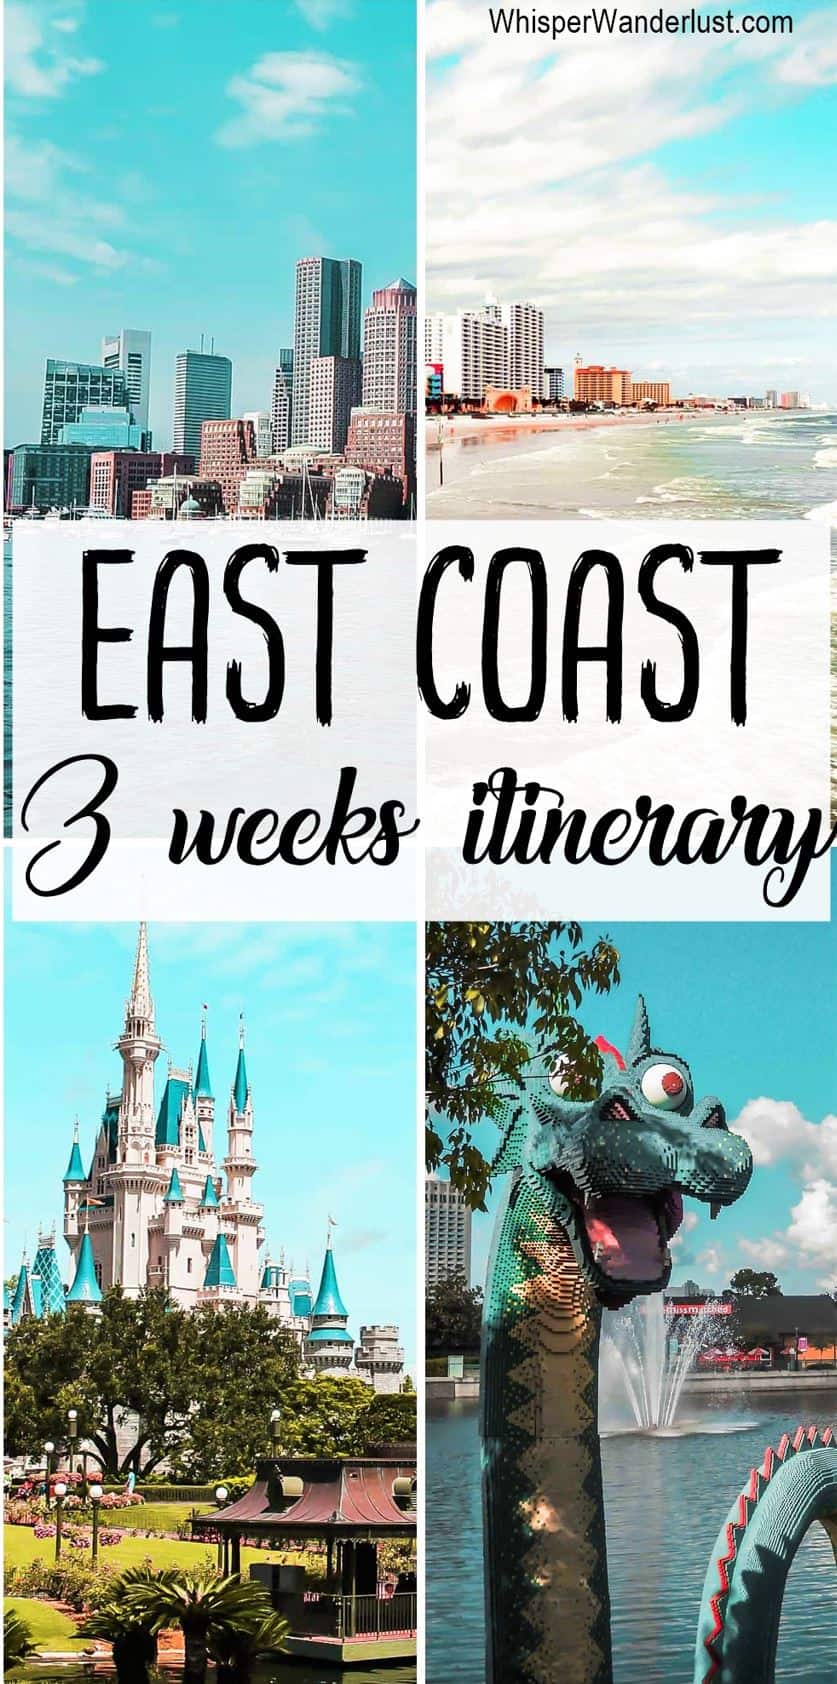 EAST COAST 3 weeks itinerary